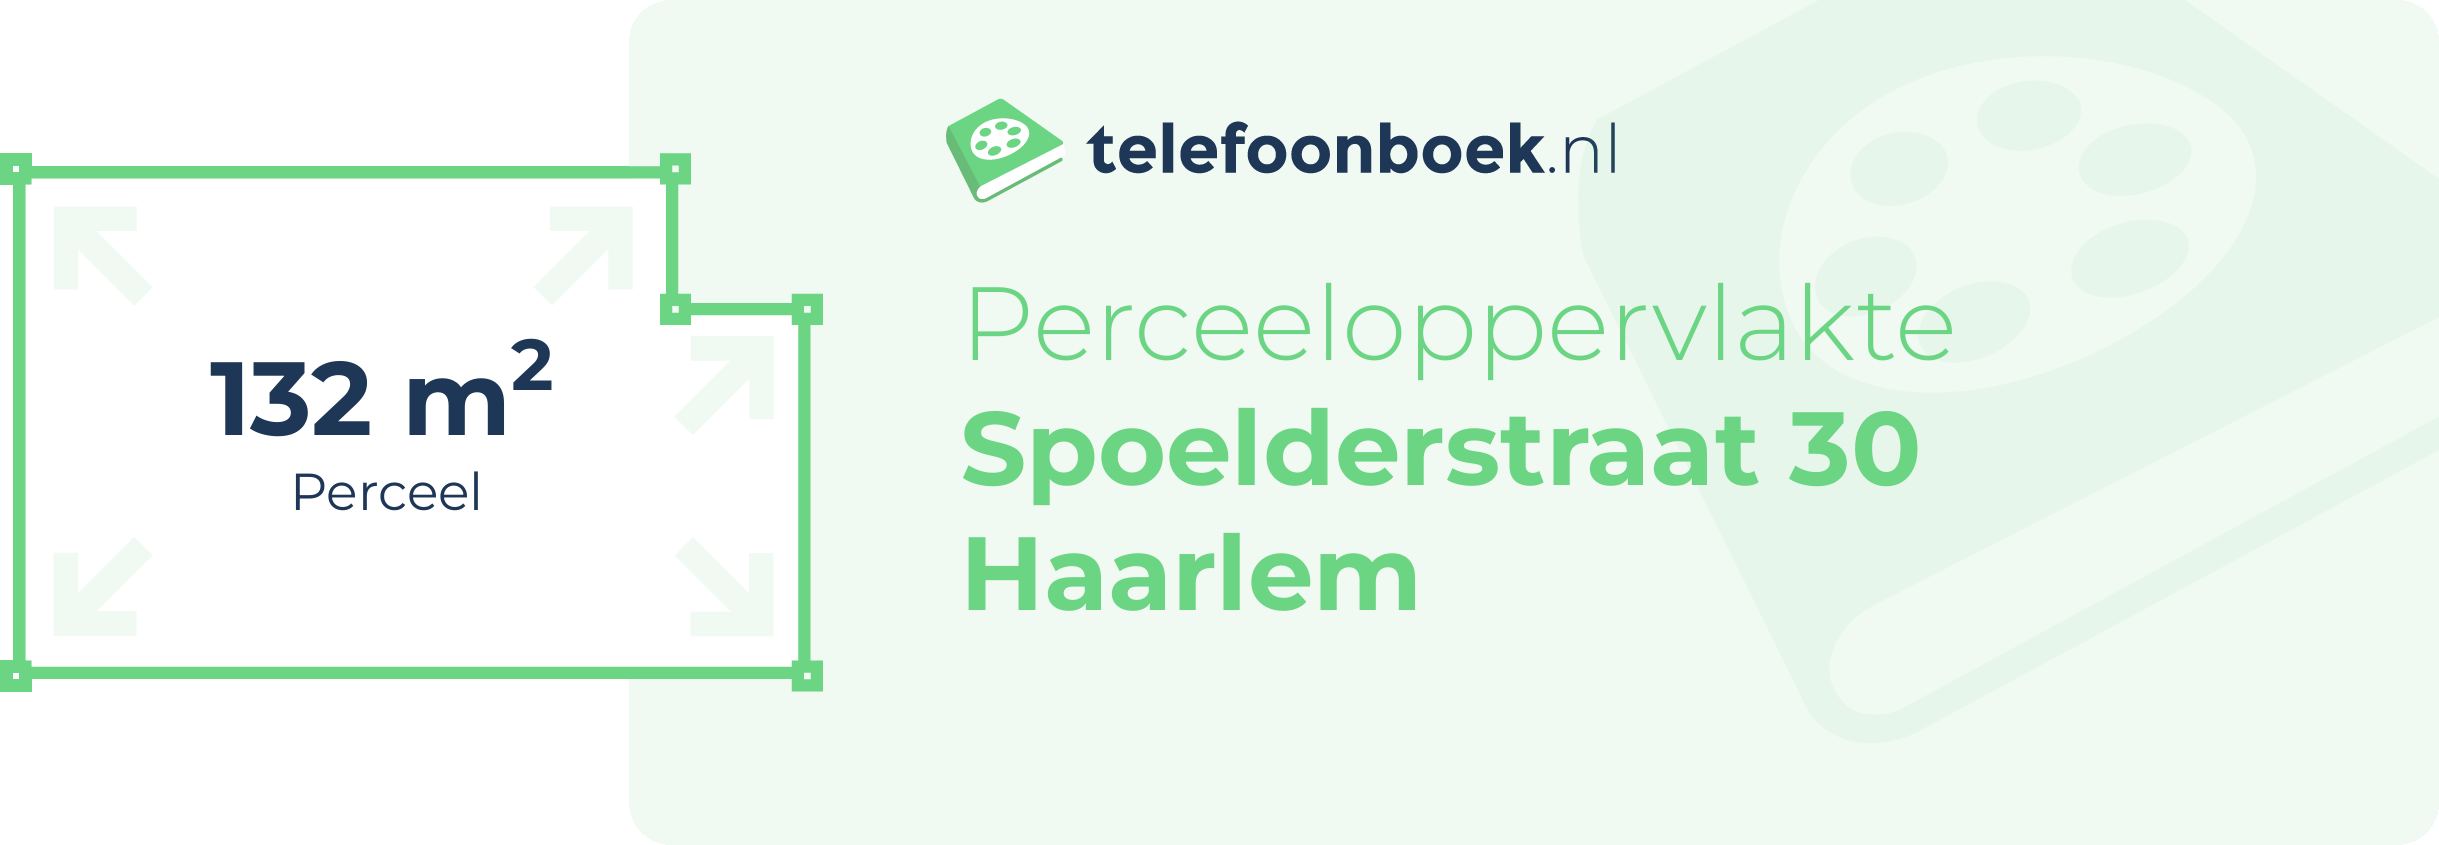 Perceeloppervlakte Spoelderstraat 30 Haarlem